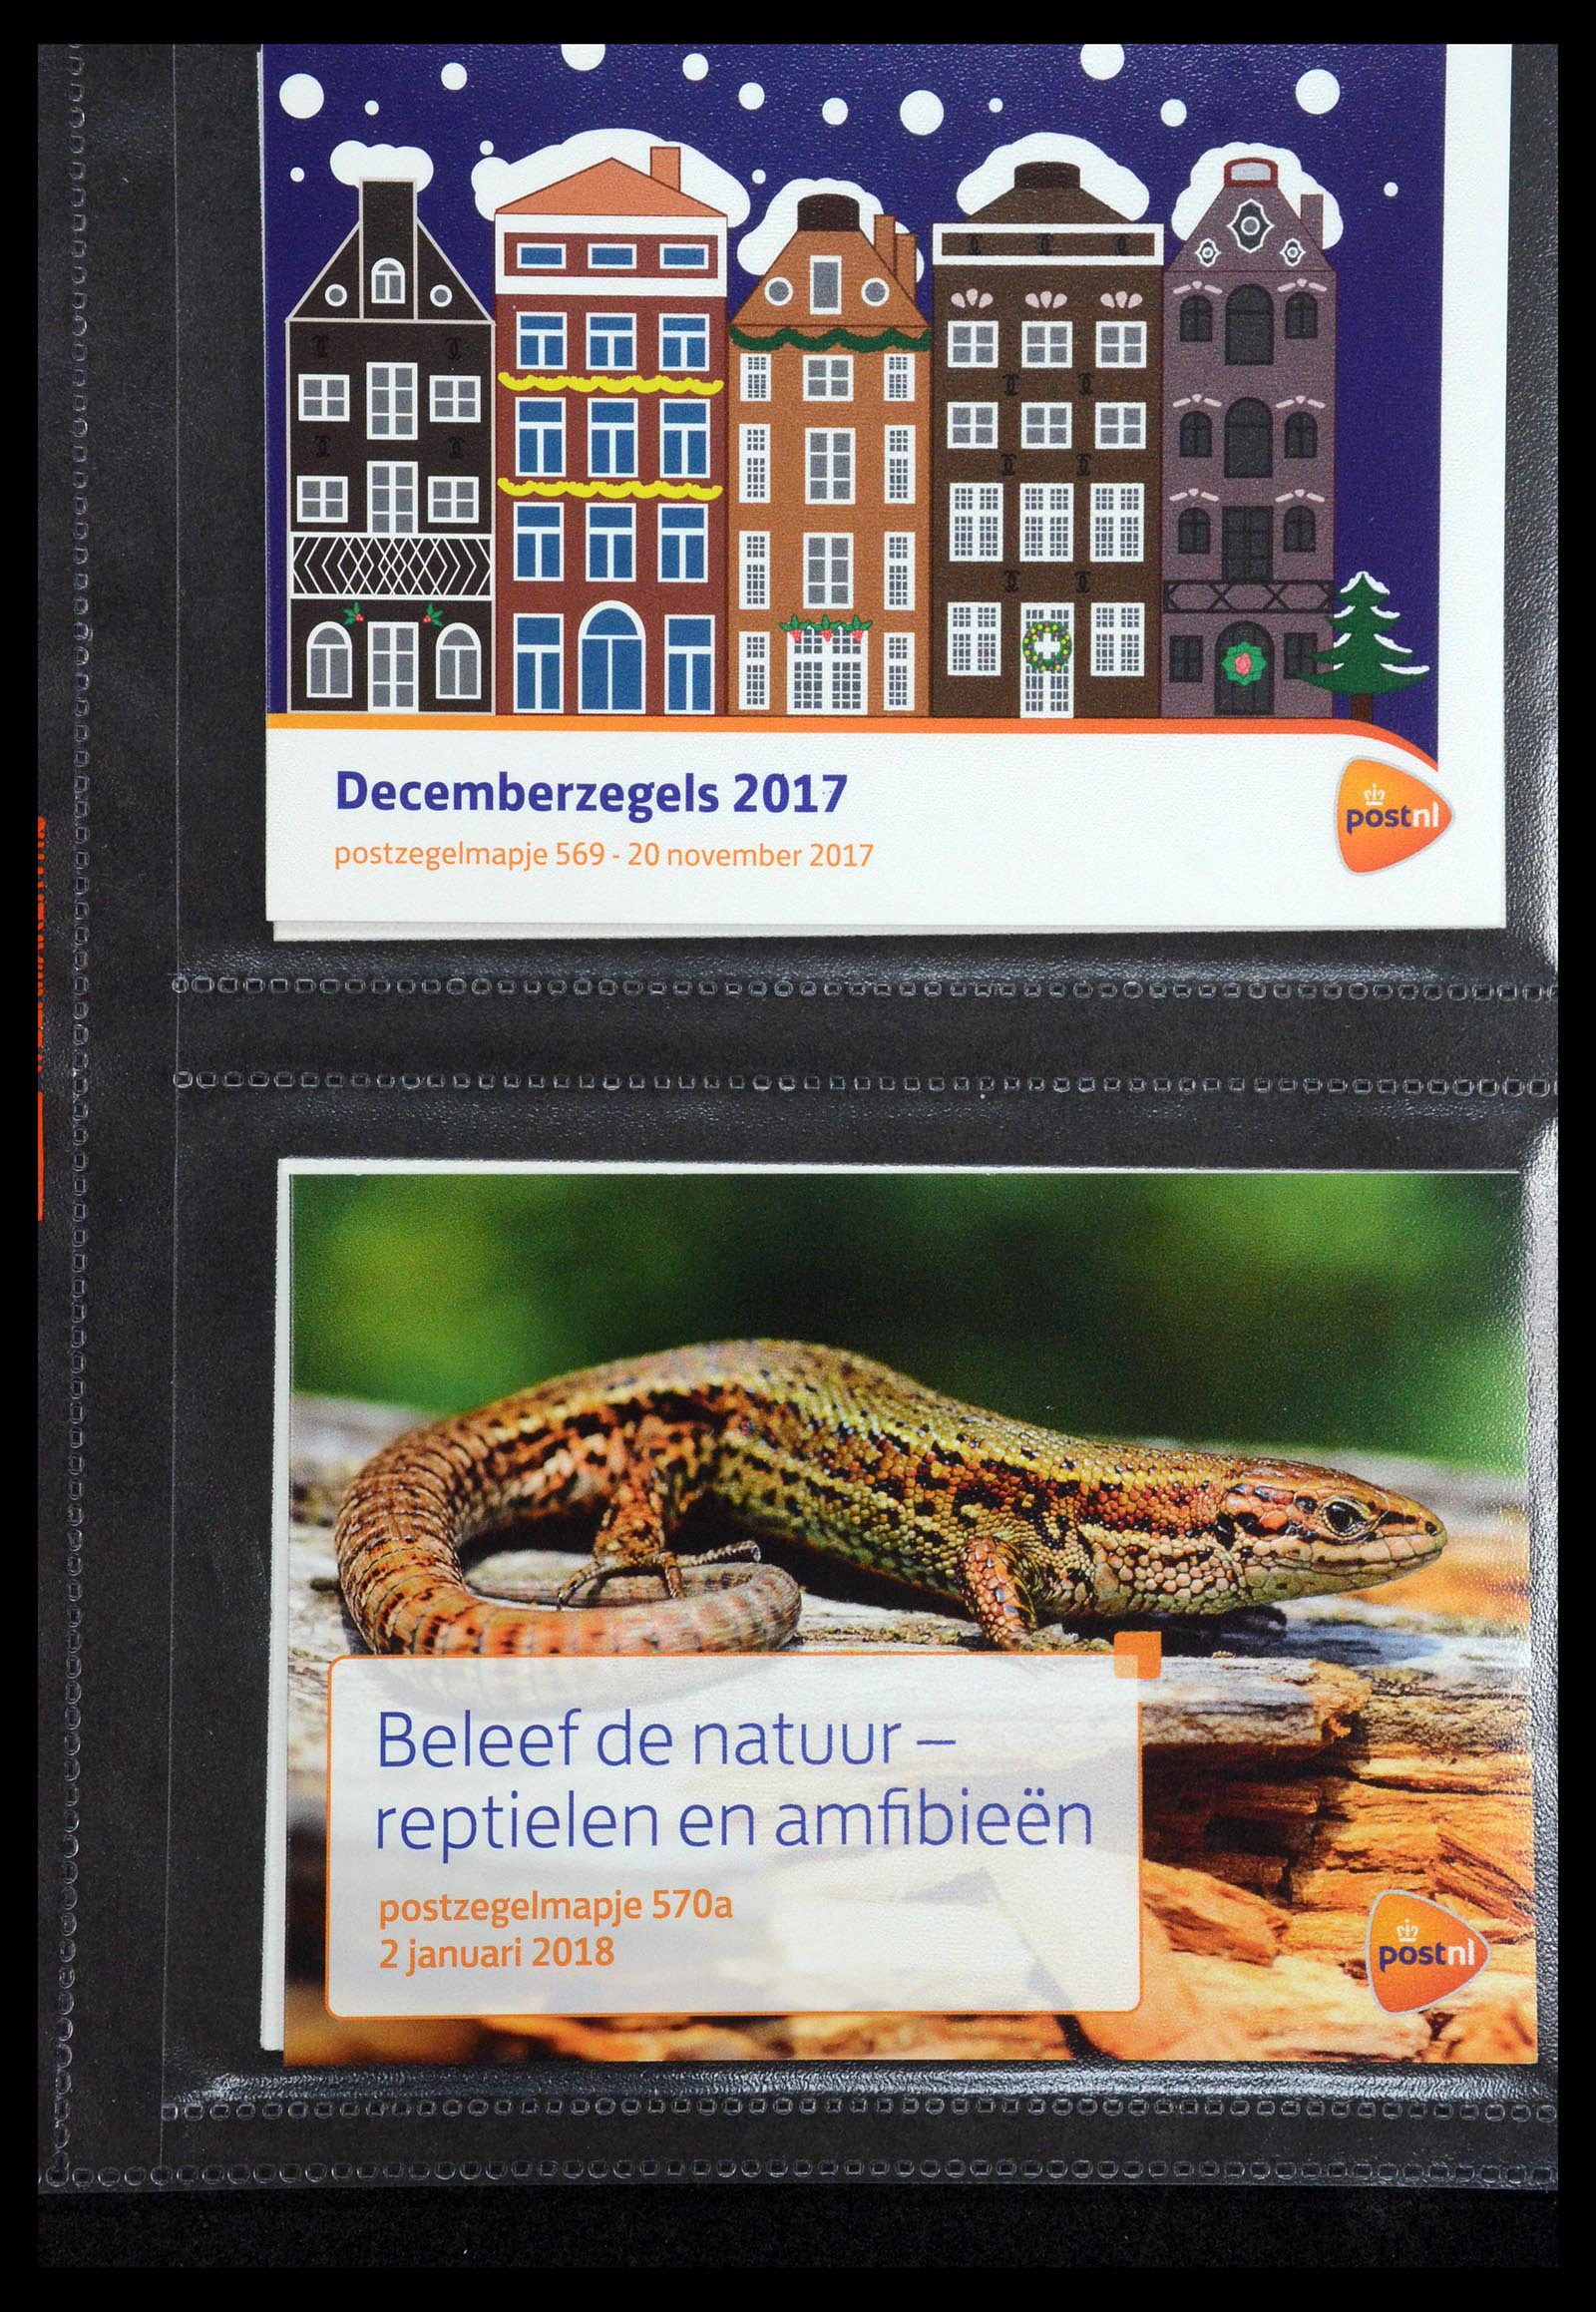 35144 343 - Stamp Collection 35144 Netherlands PTT presentation packs 1982-2021!